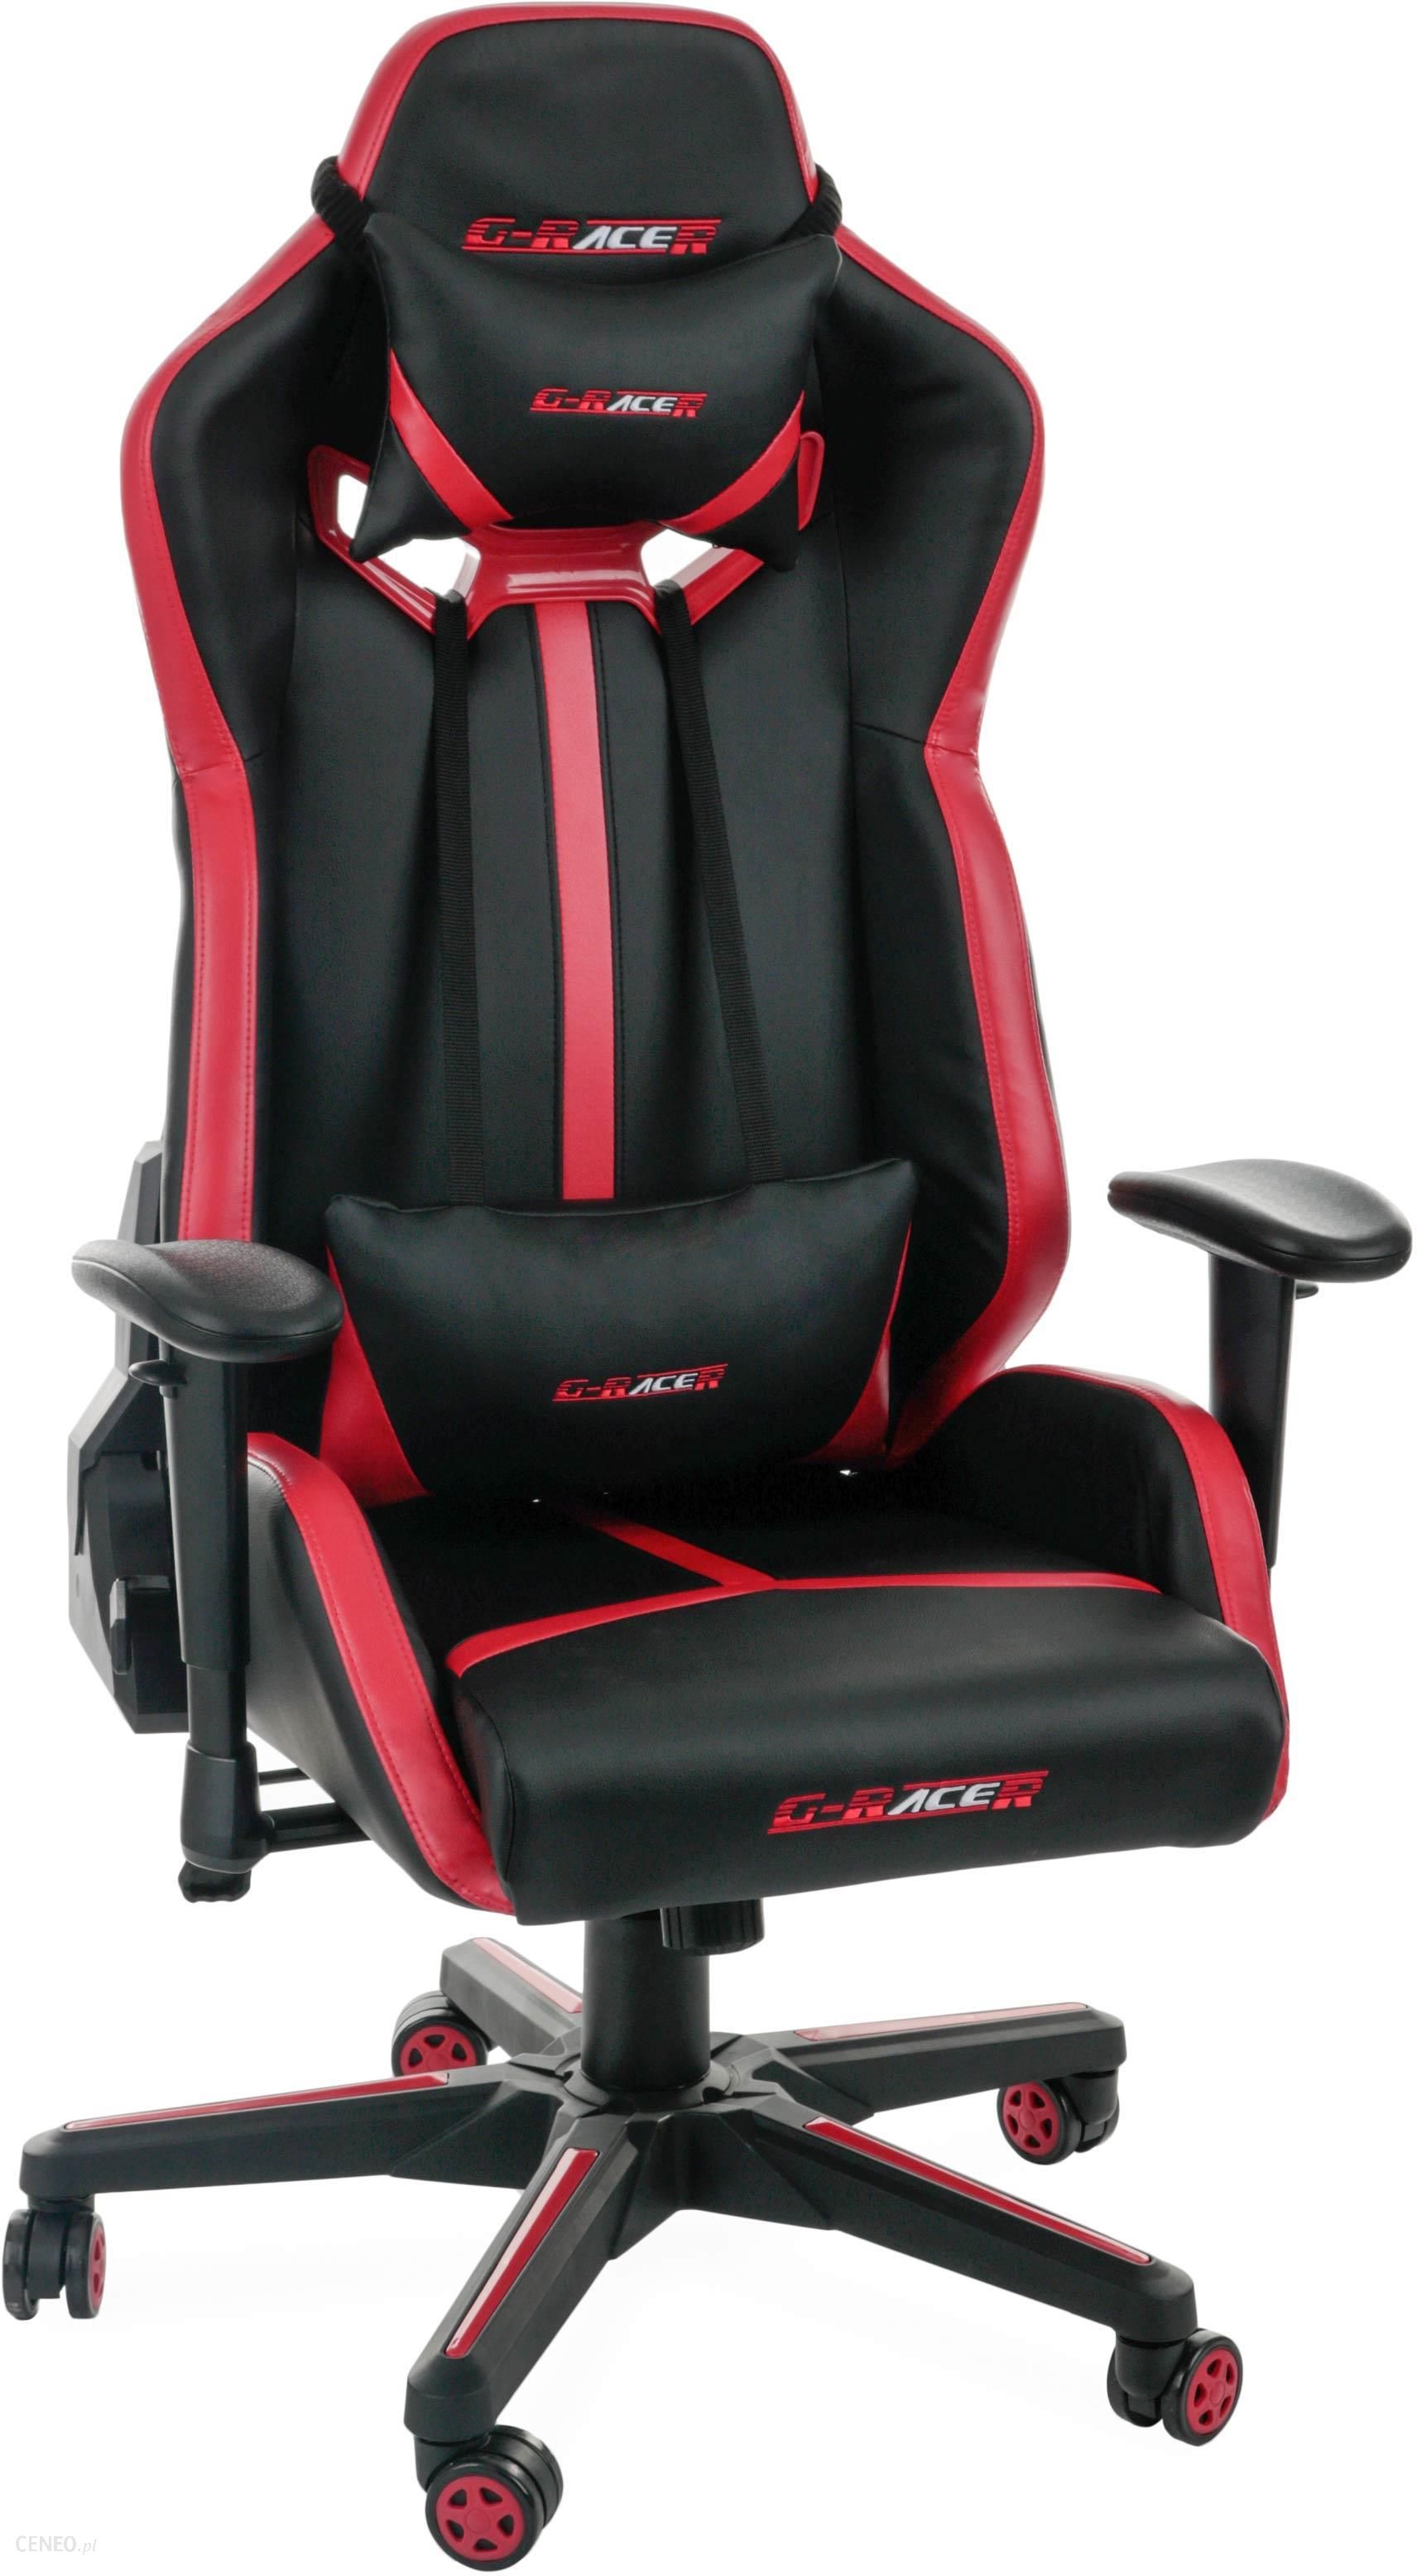 Fotel Dla Gracza Centrumkrzesel Pl Fotel Gamingowy G Racer 1 Ceny I Opinie Ceneo Pl